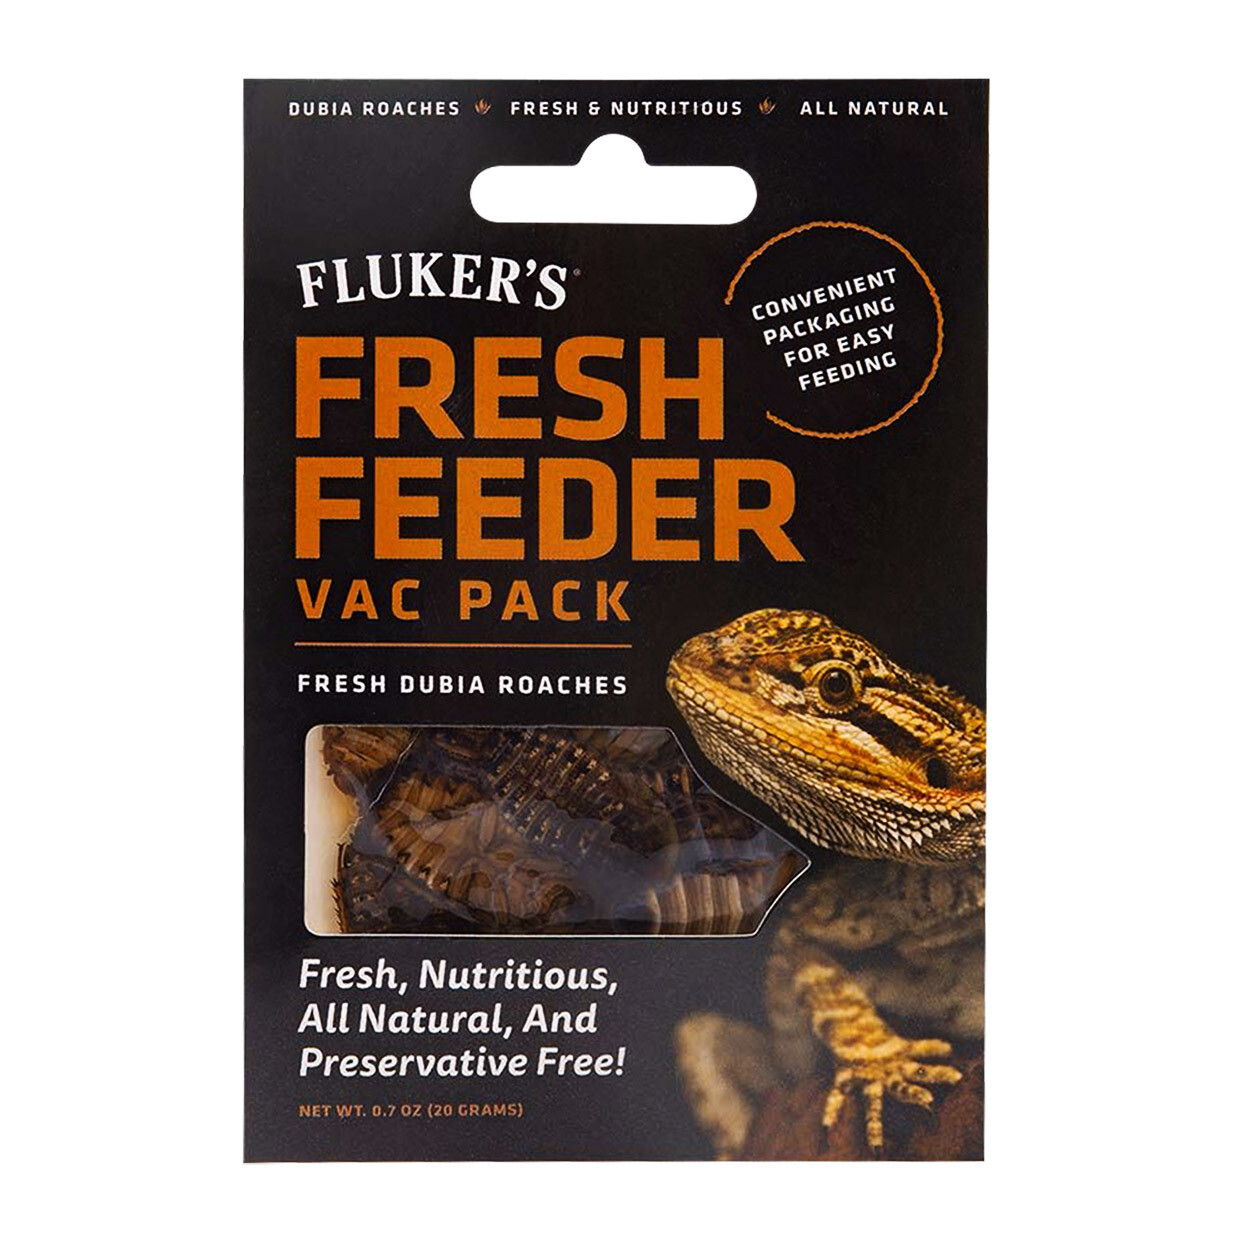 Fluker's Fresh Feeder Vac Pack - Fresh Dubia Roaches - 20g (0.7oz)